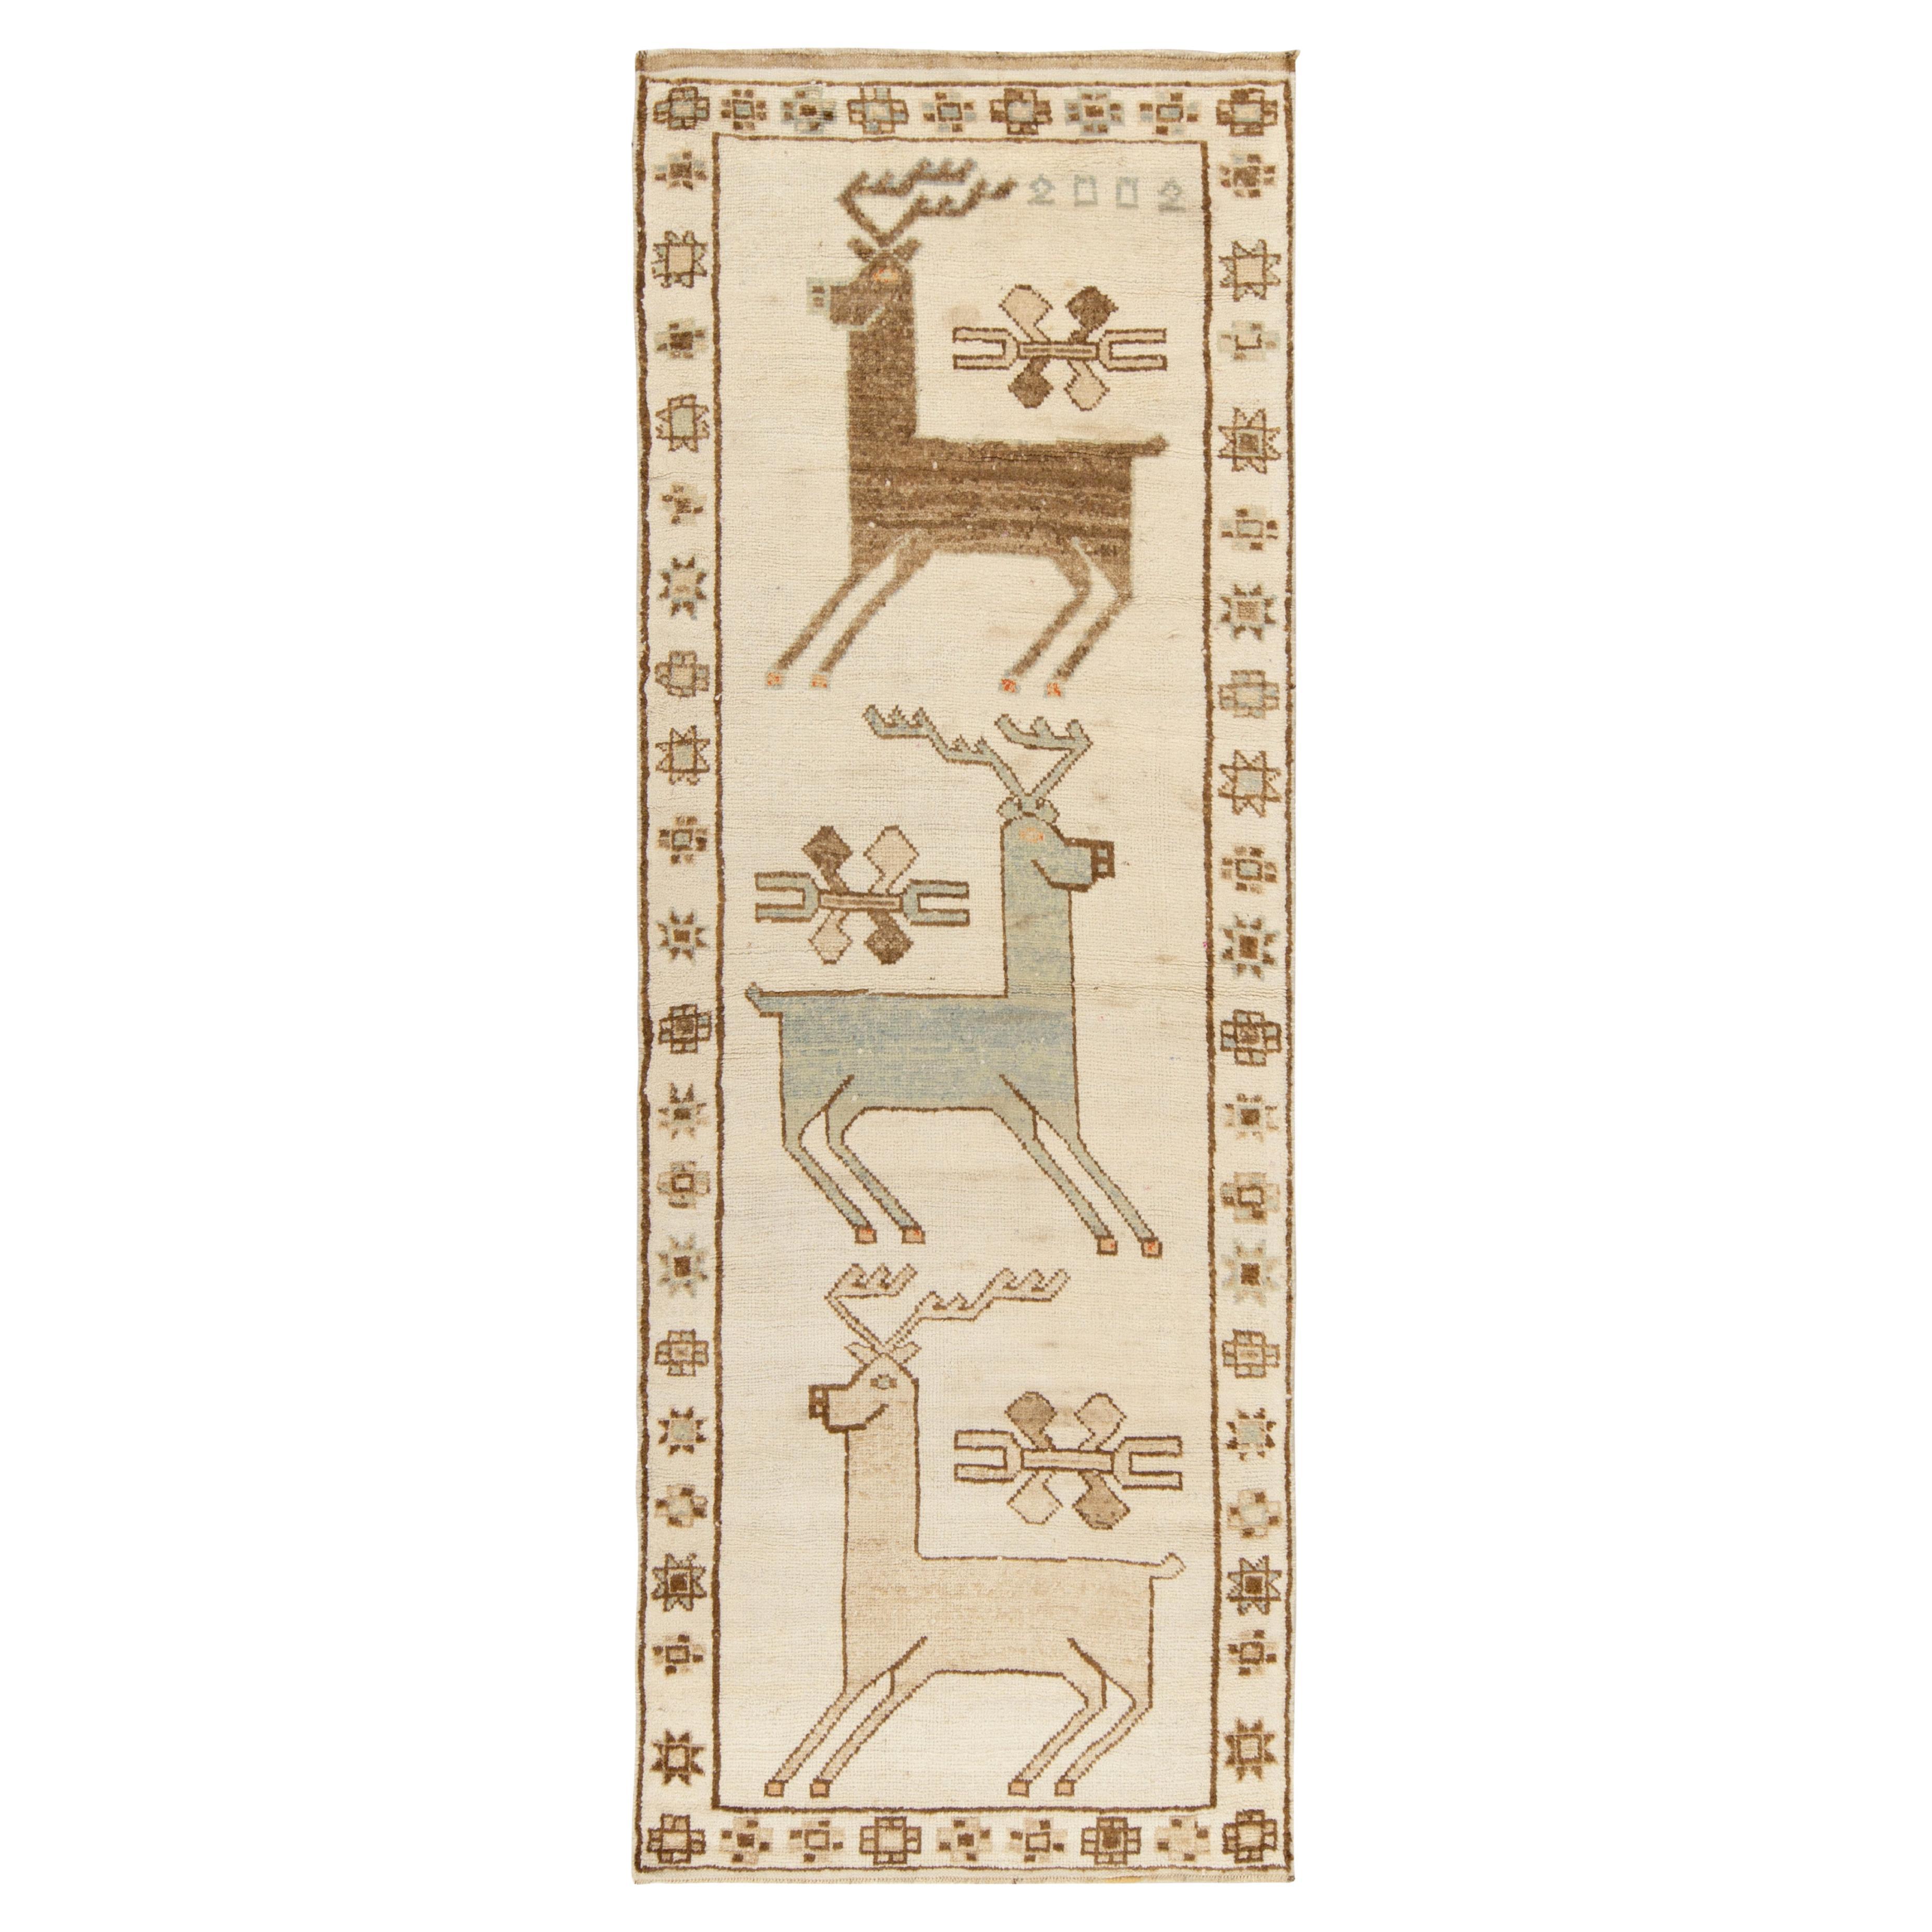 Seltener Vintage-Stammesteppich mit beige-braunen Hirsch-Bildermustern von Teppich & Kelim